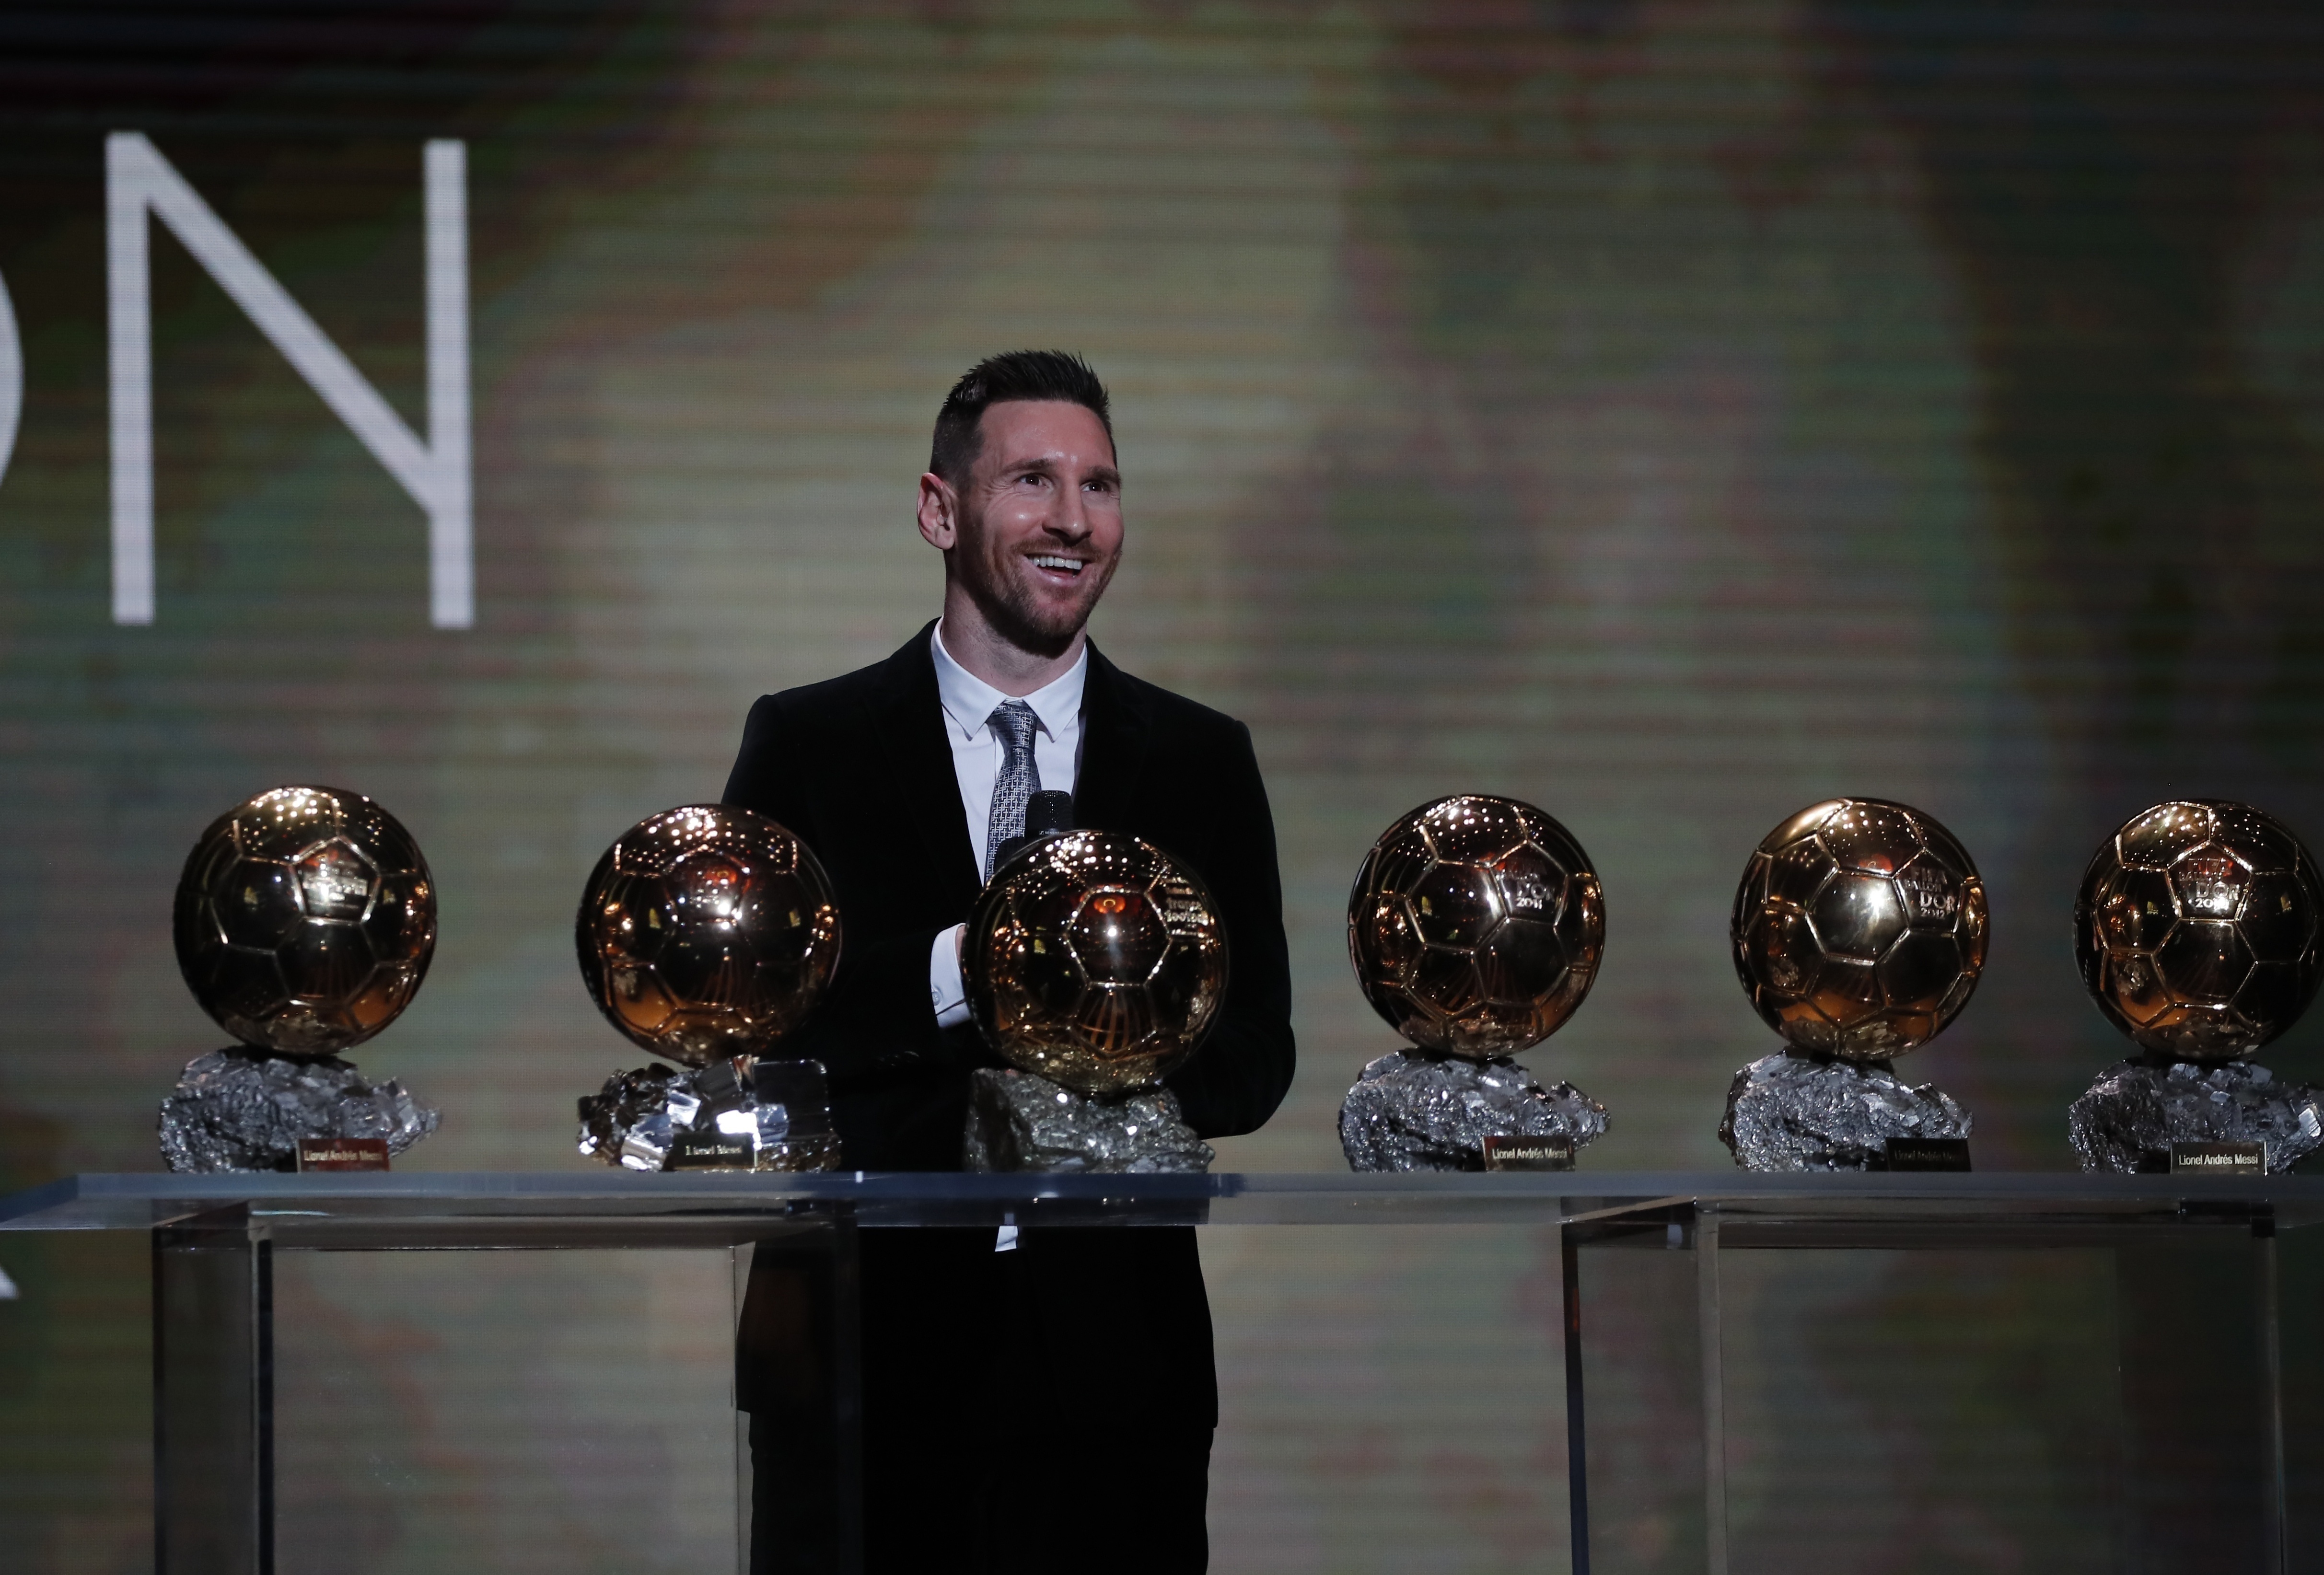  Lionel Messi con sus seis Balones de Oro durante la ceremonia de premiación en París, el 2 de diciembre de 2019. (AP Foto/Francois Mori)